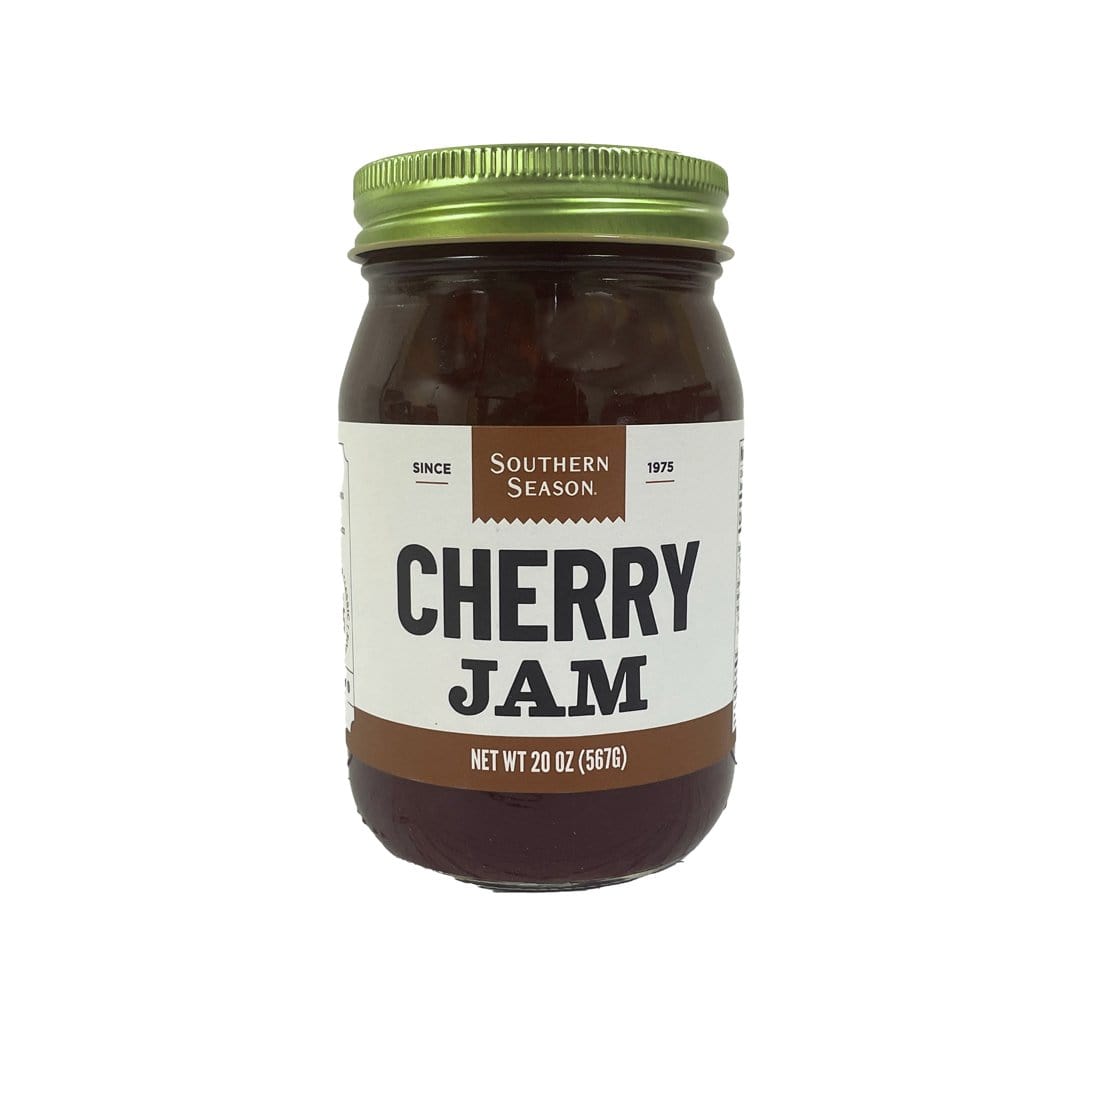 Southern Season Southern Season Cherry Jam 20 oz